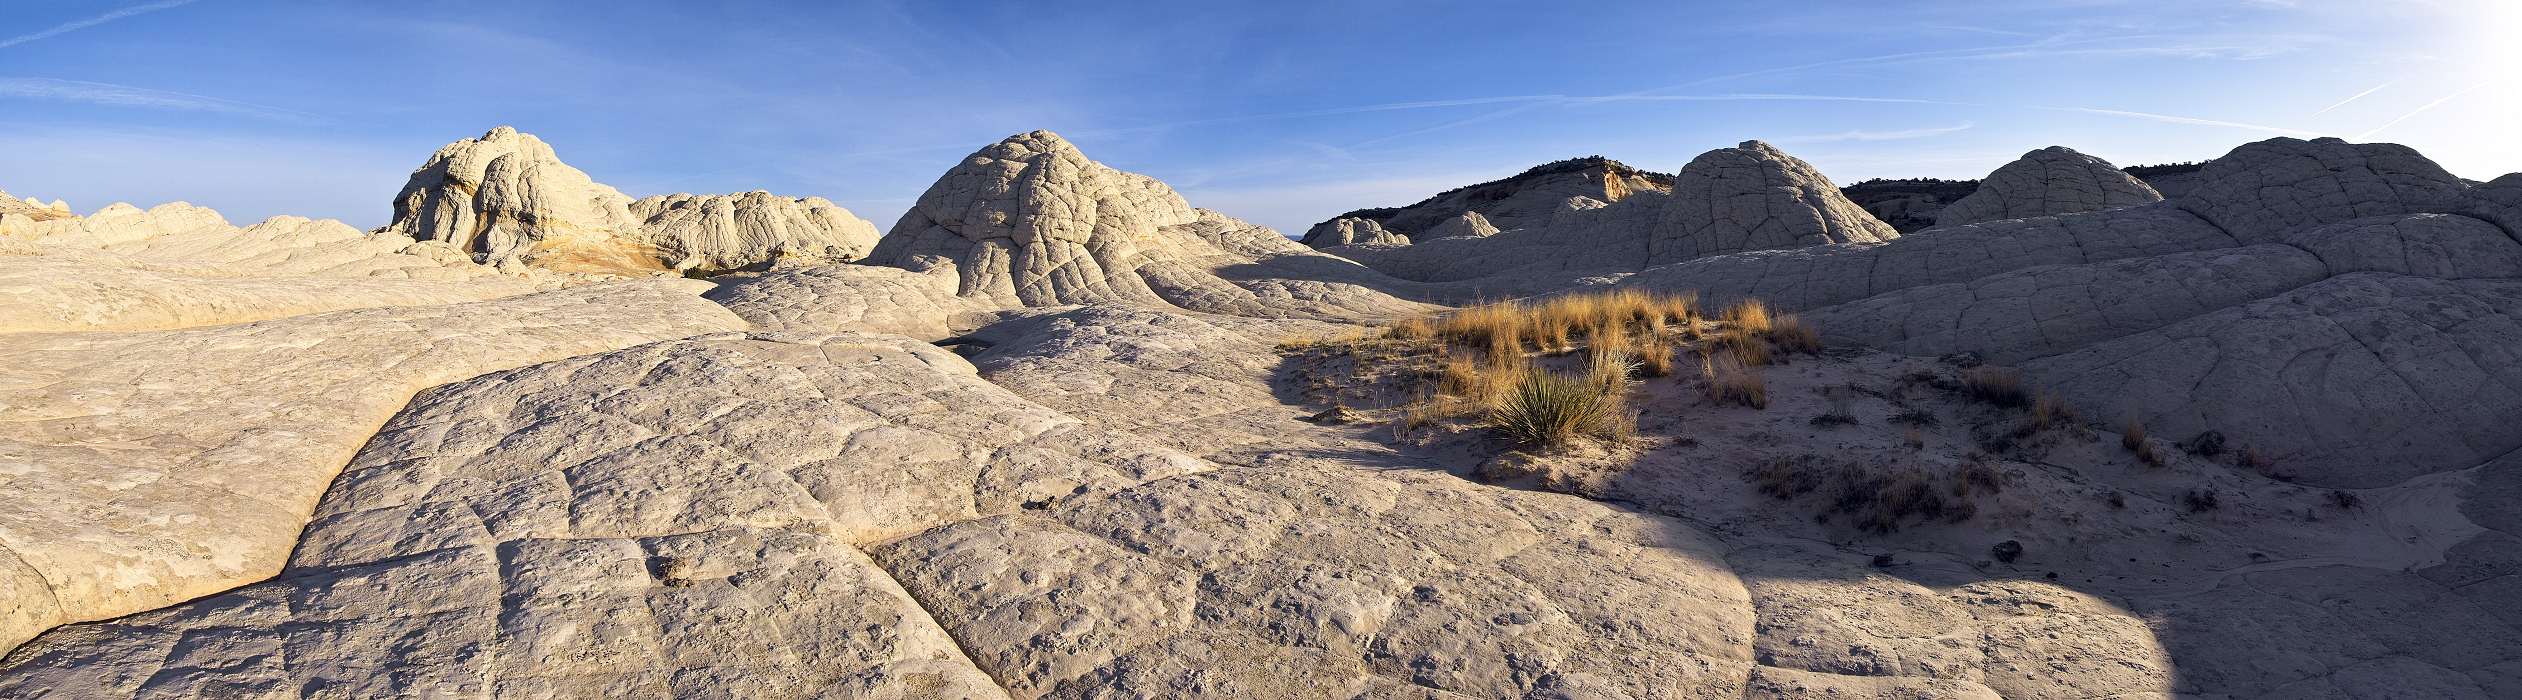  , US-West Spring 2007, White Pocket, Vermilion Cliffs Wilderness Area, Arizona, United States, img03429-03438.jpg